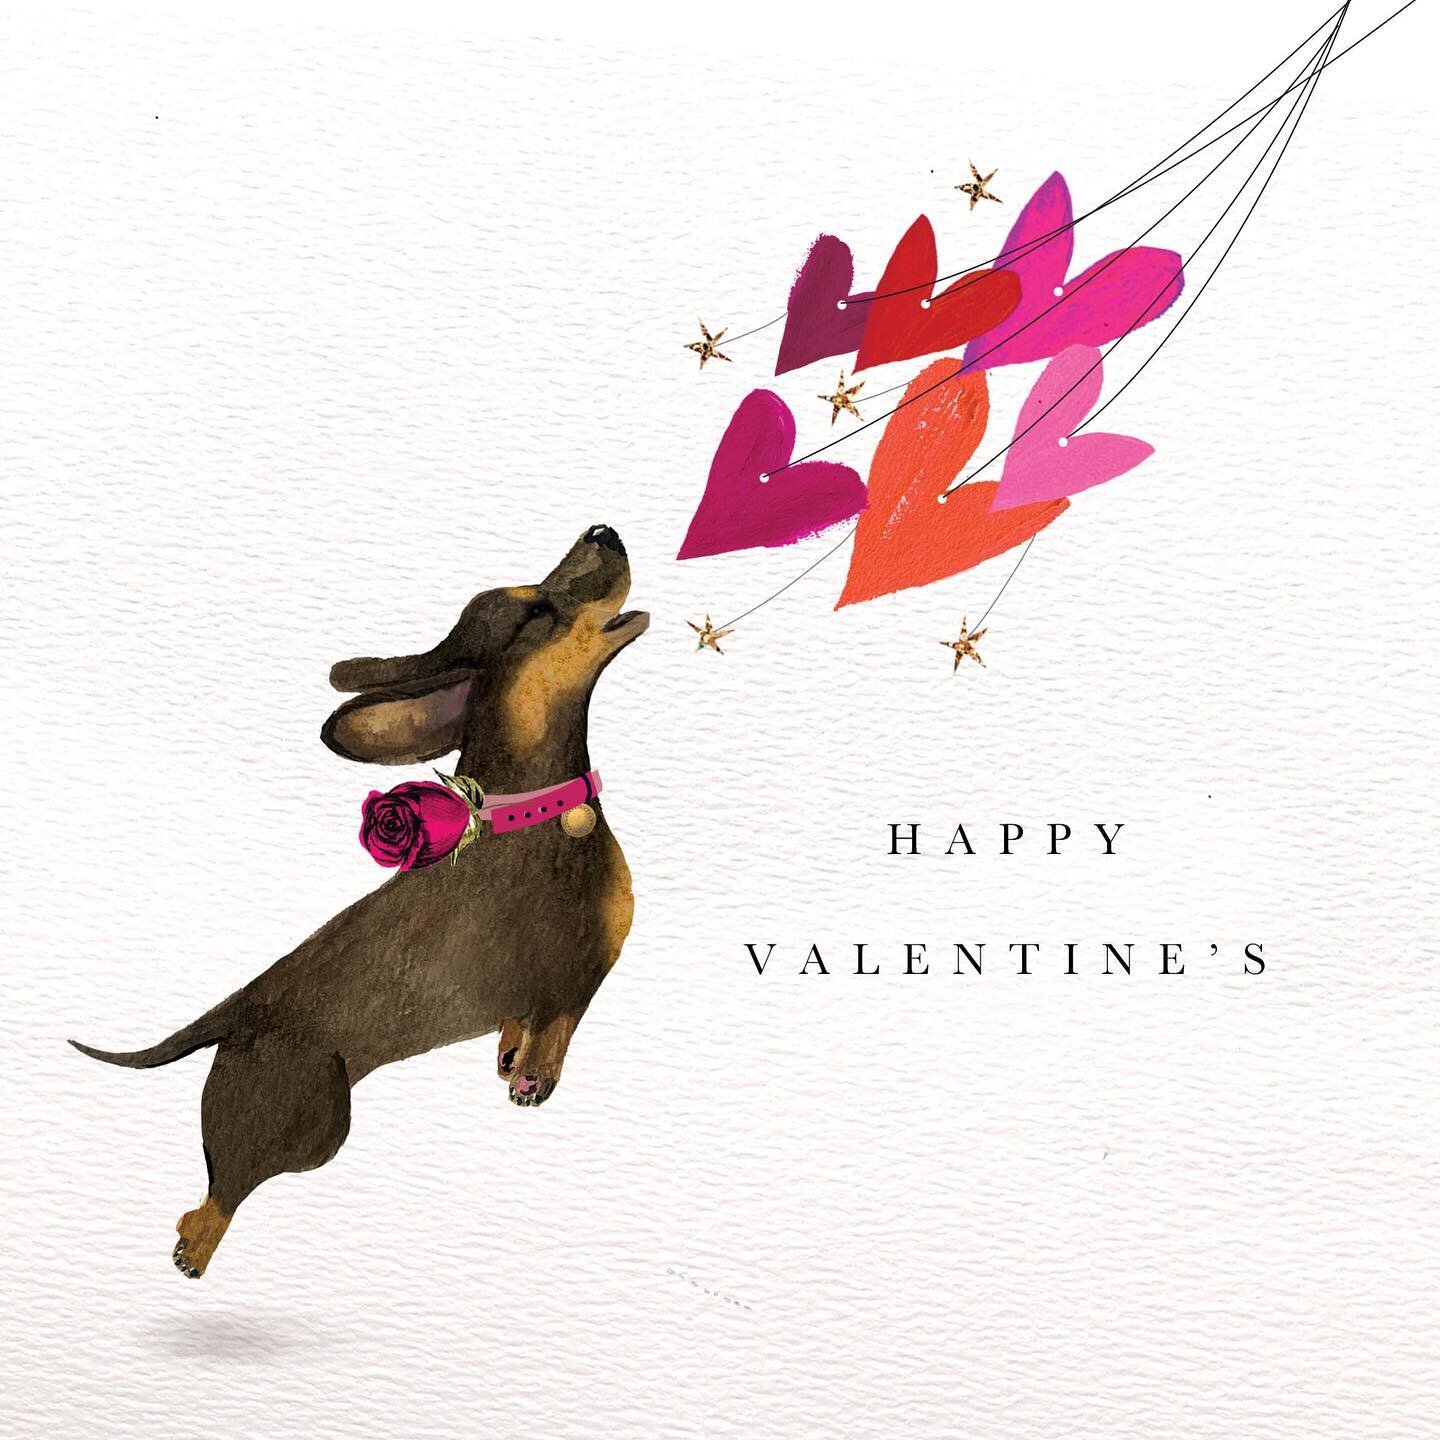 Happy Valentine&rsquo;s Day! My favourite season to design 🌹❤️ 

#valentines #sausagedog #dogsofinstagram #dachshund #dachshundsofinstagram #dog #illustration #art #greetingcards #justacard #valentinesday #valentinesdog